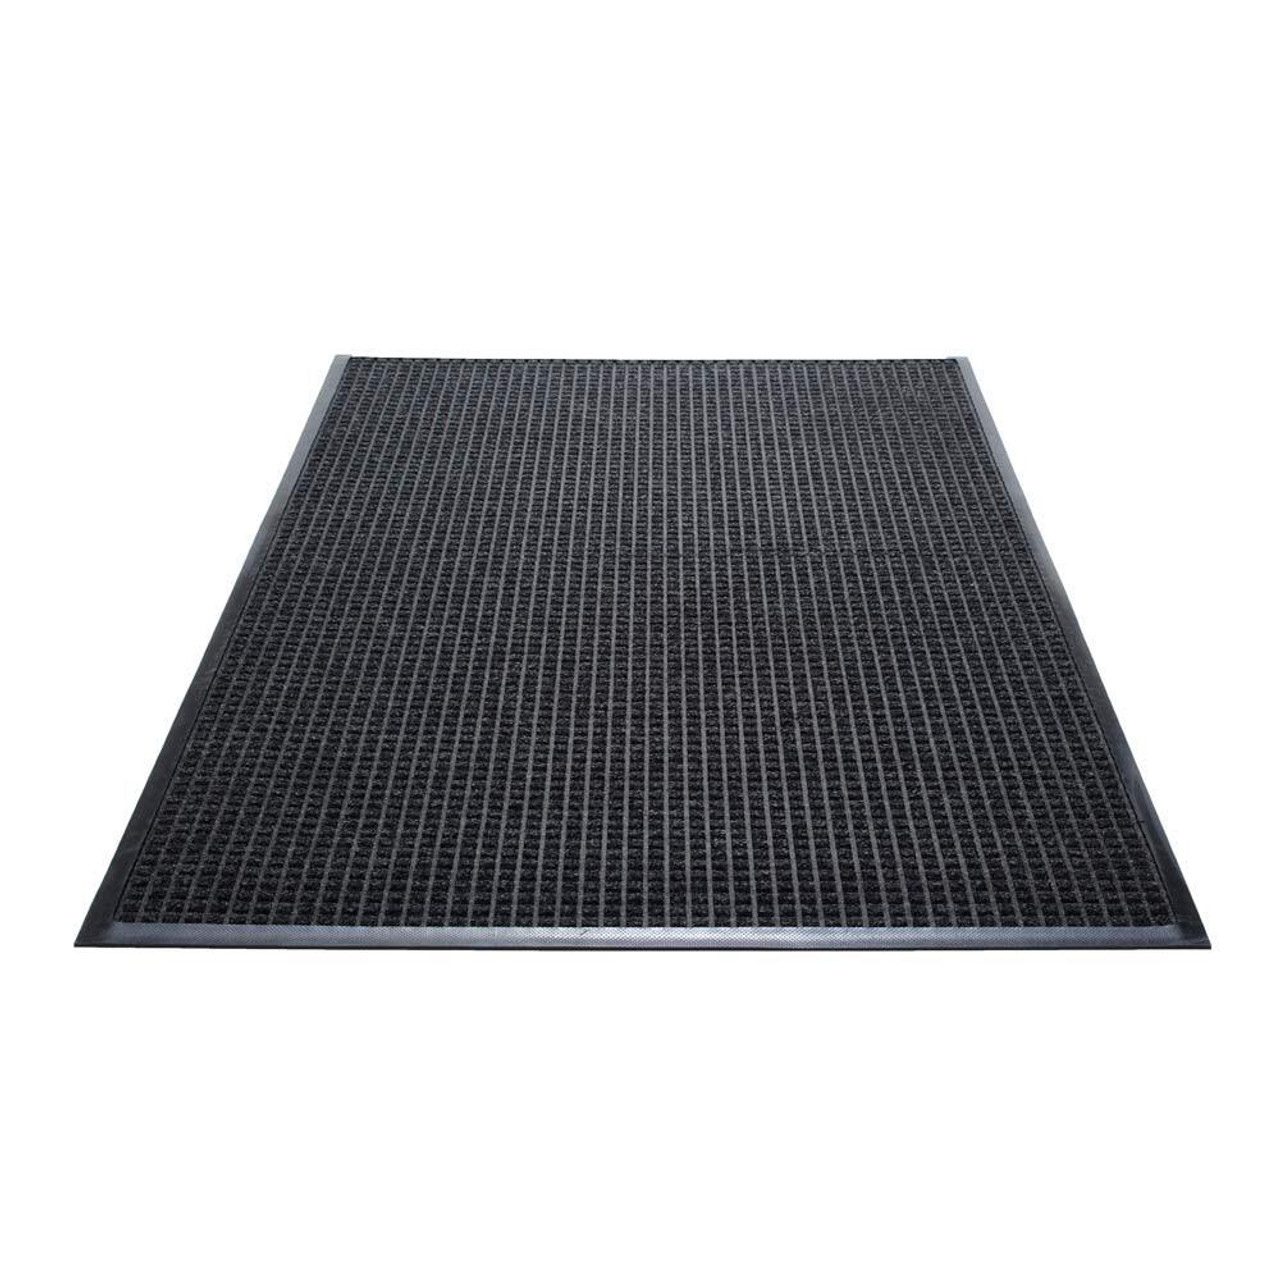 WaterGuard Indoor/Outdoor Mat | Guardian Flooring Protection